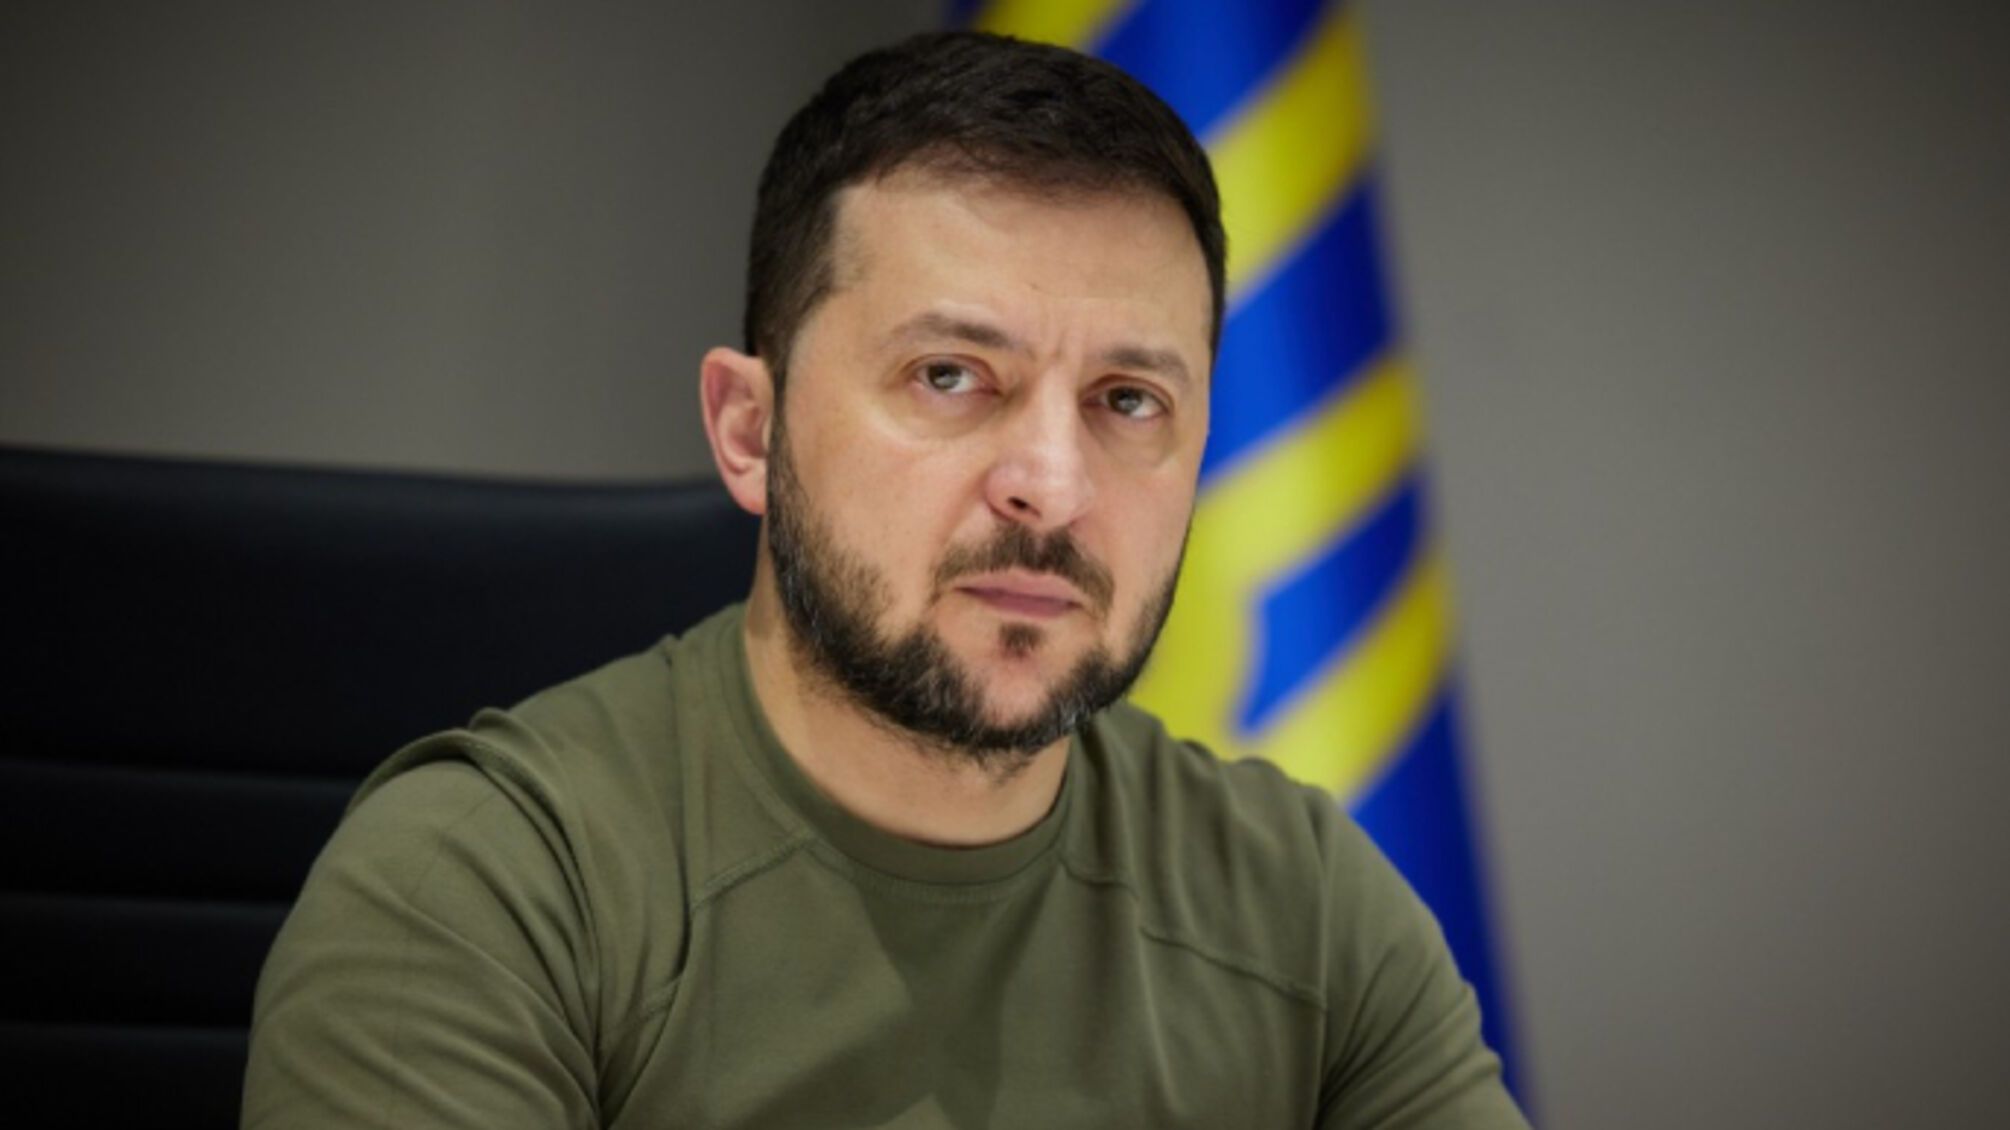 Украина пока не может начать контрнаступление из-за нехватки техники и боеприпасов, - Зеленский